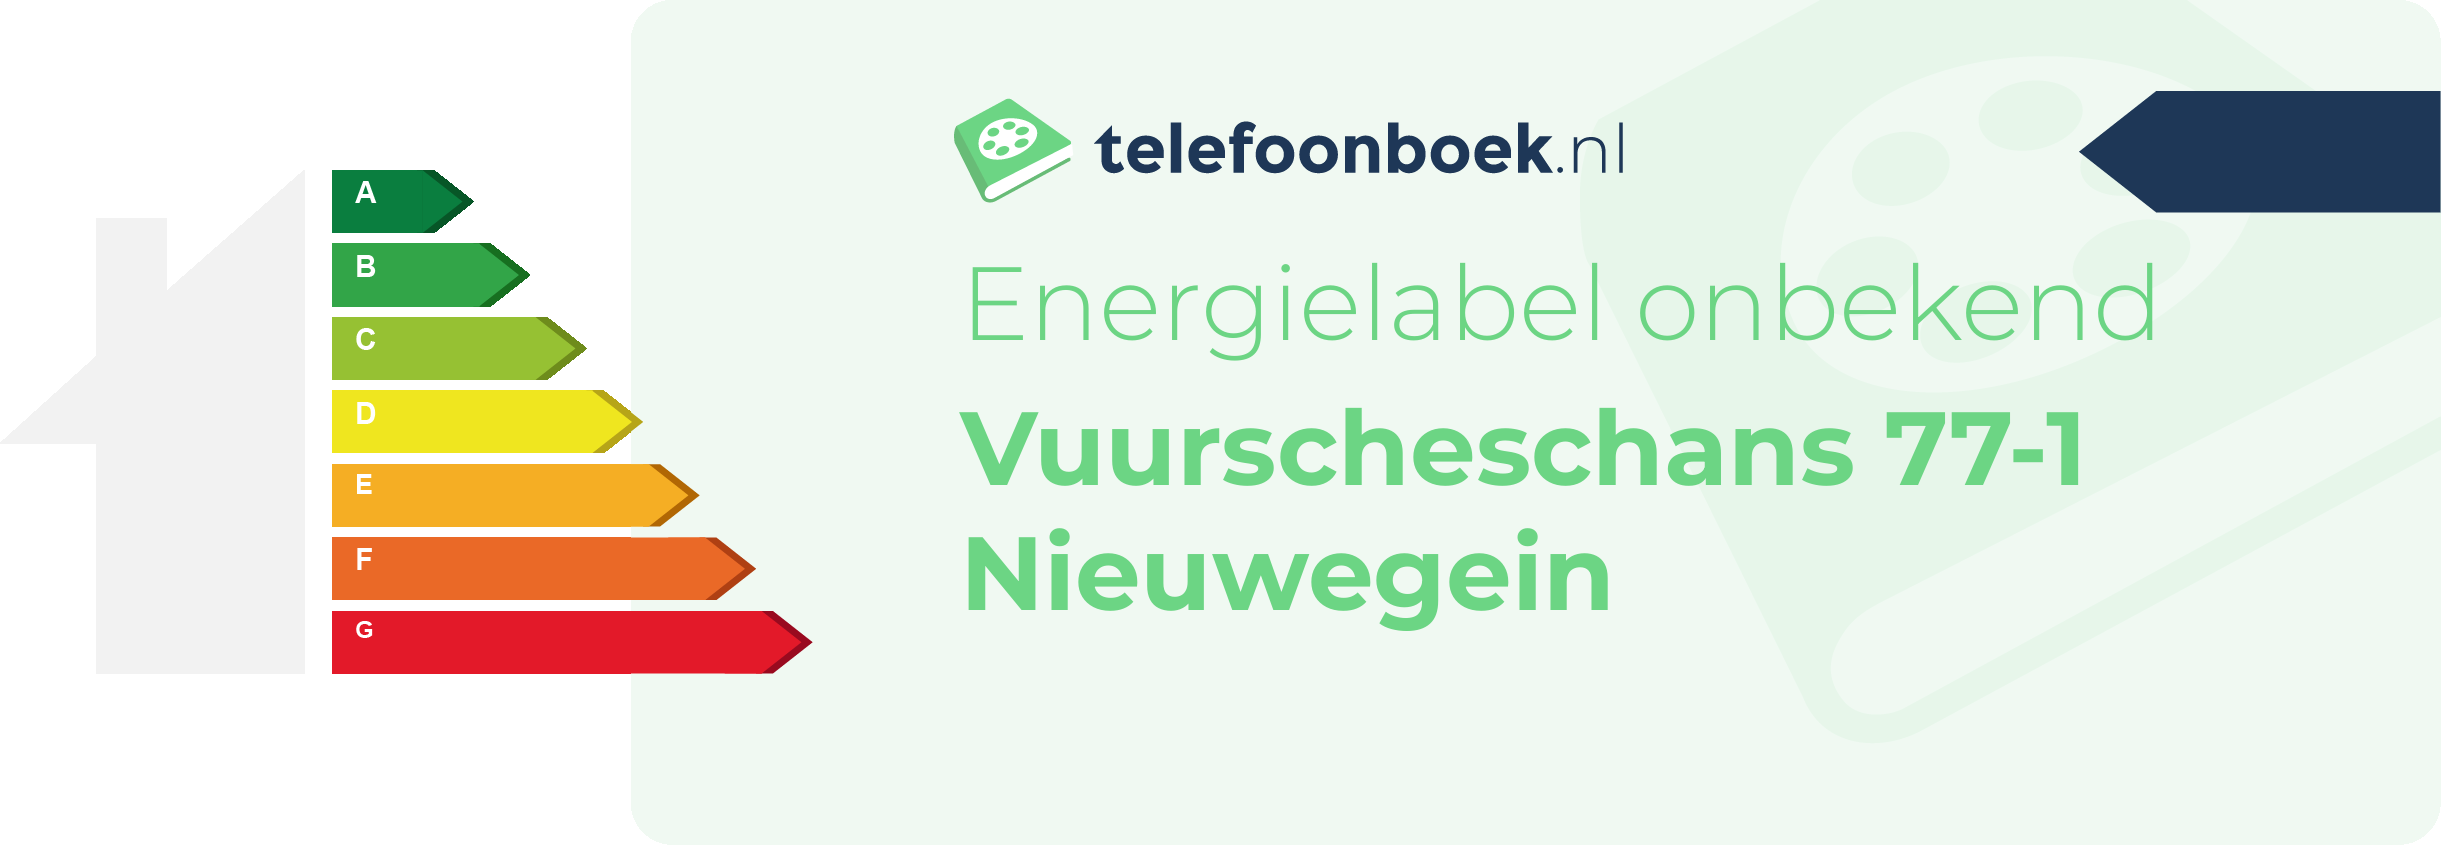 Energielabel Vuurscheschans 77-1 Nieuwegein